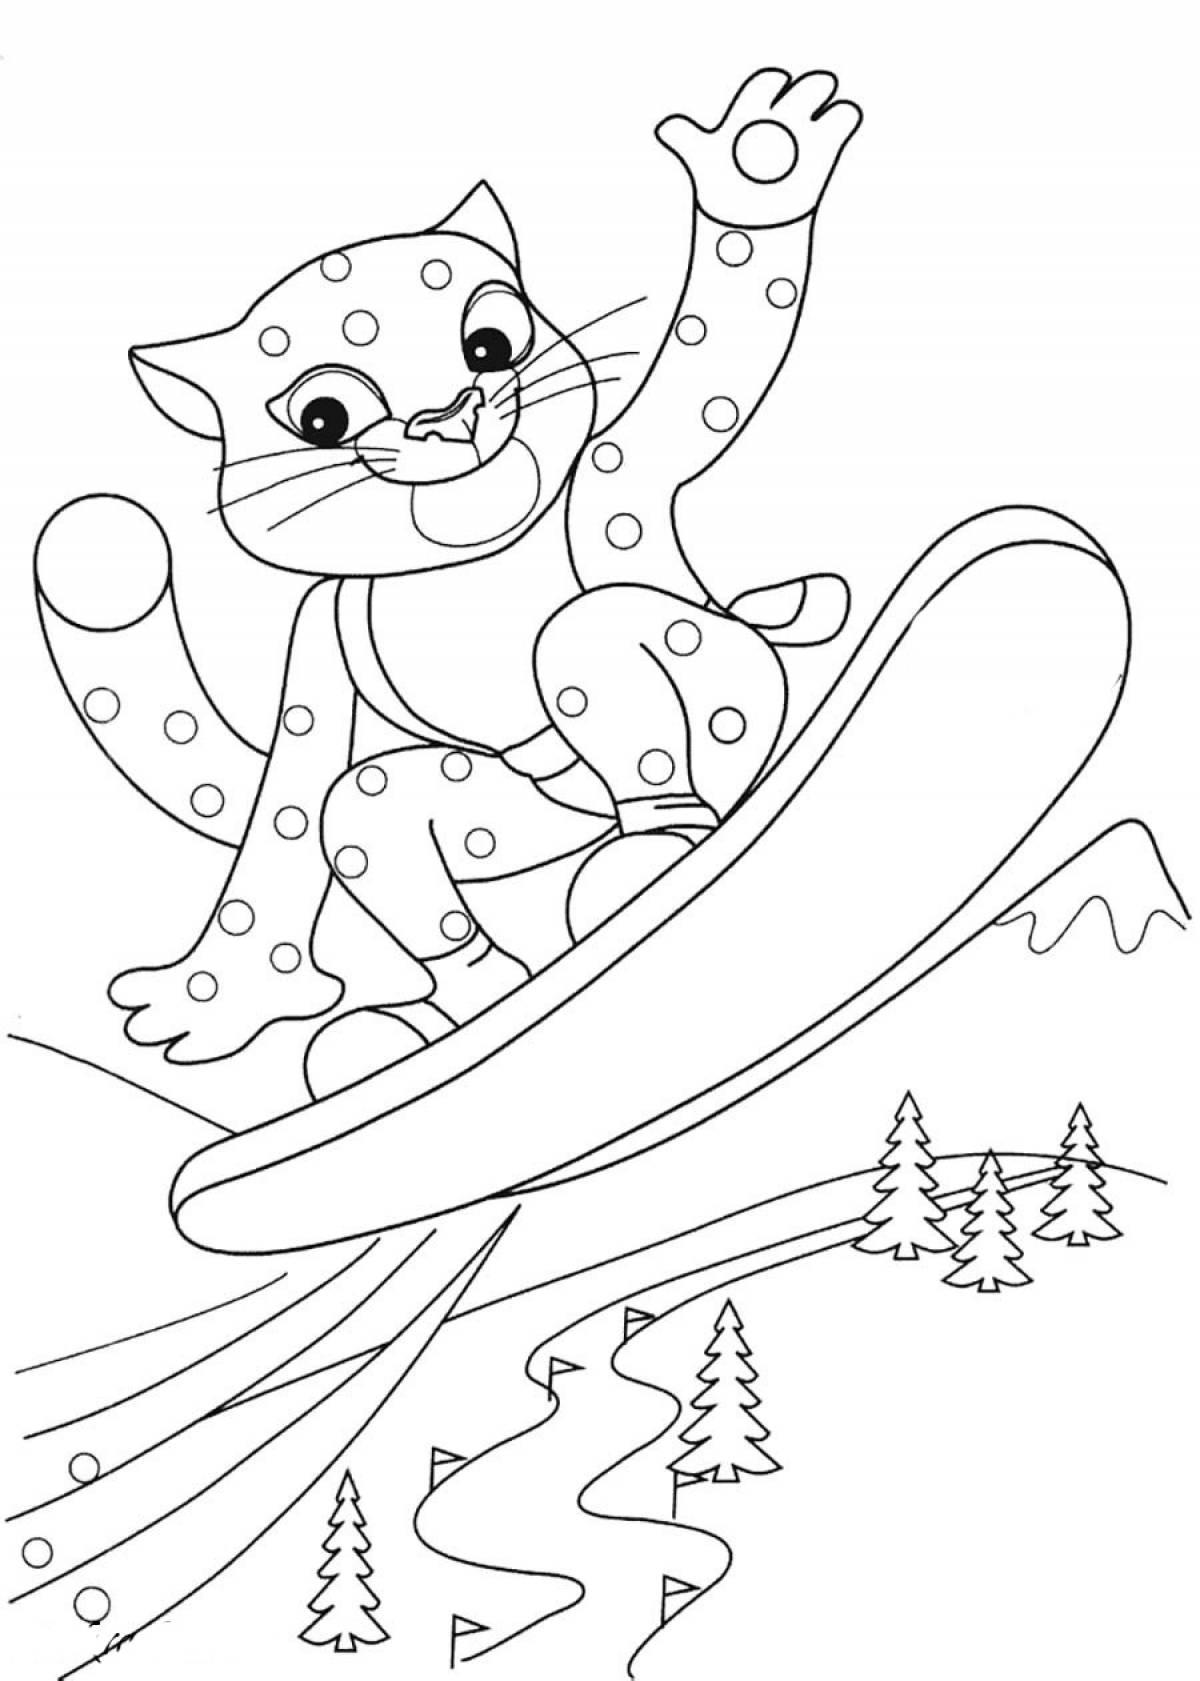 Tiger cub on a snowboard